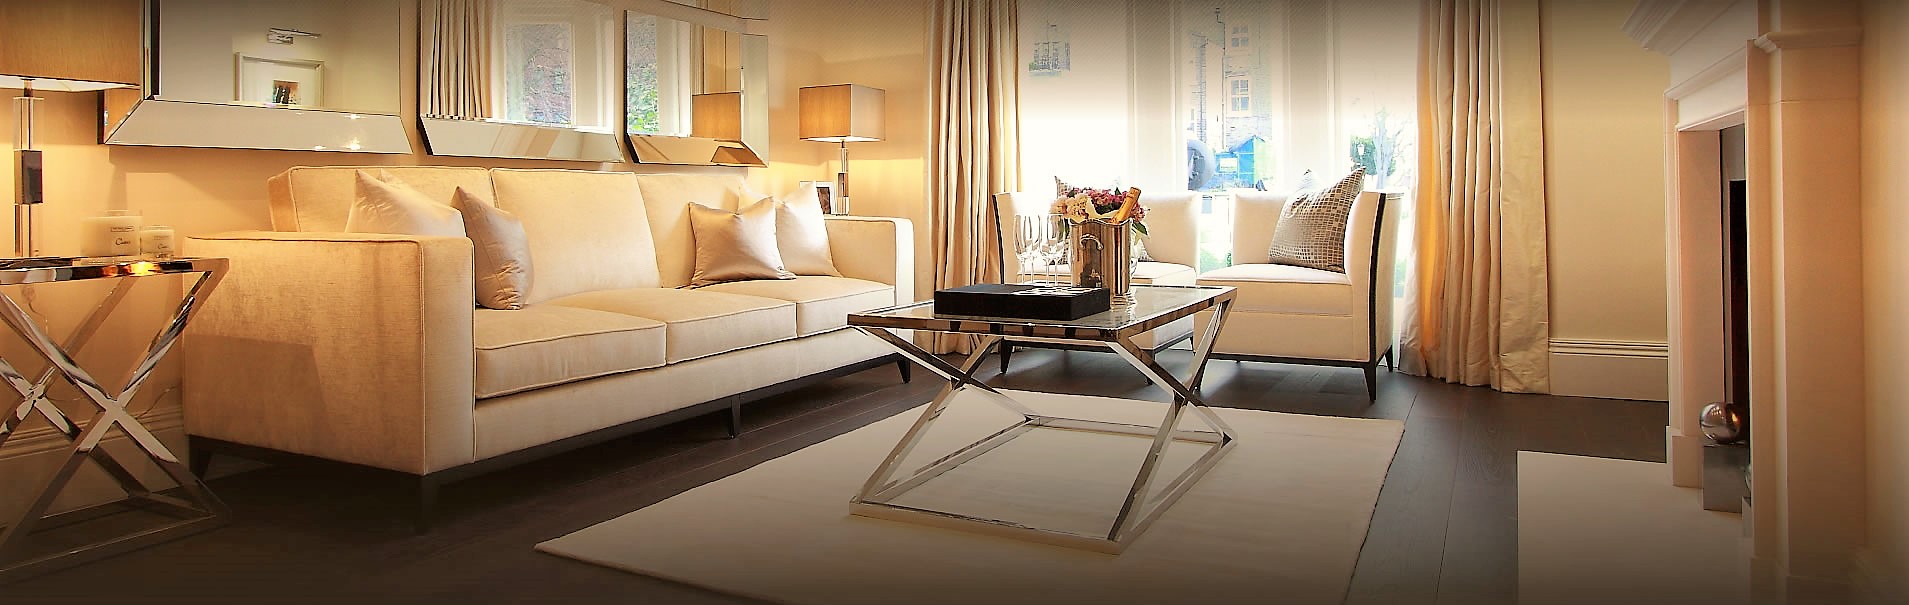 residential interior design furniture